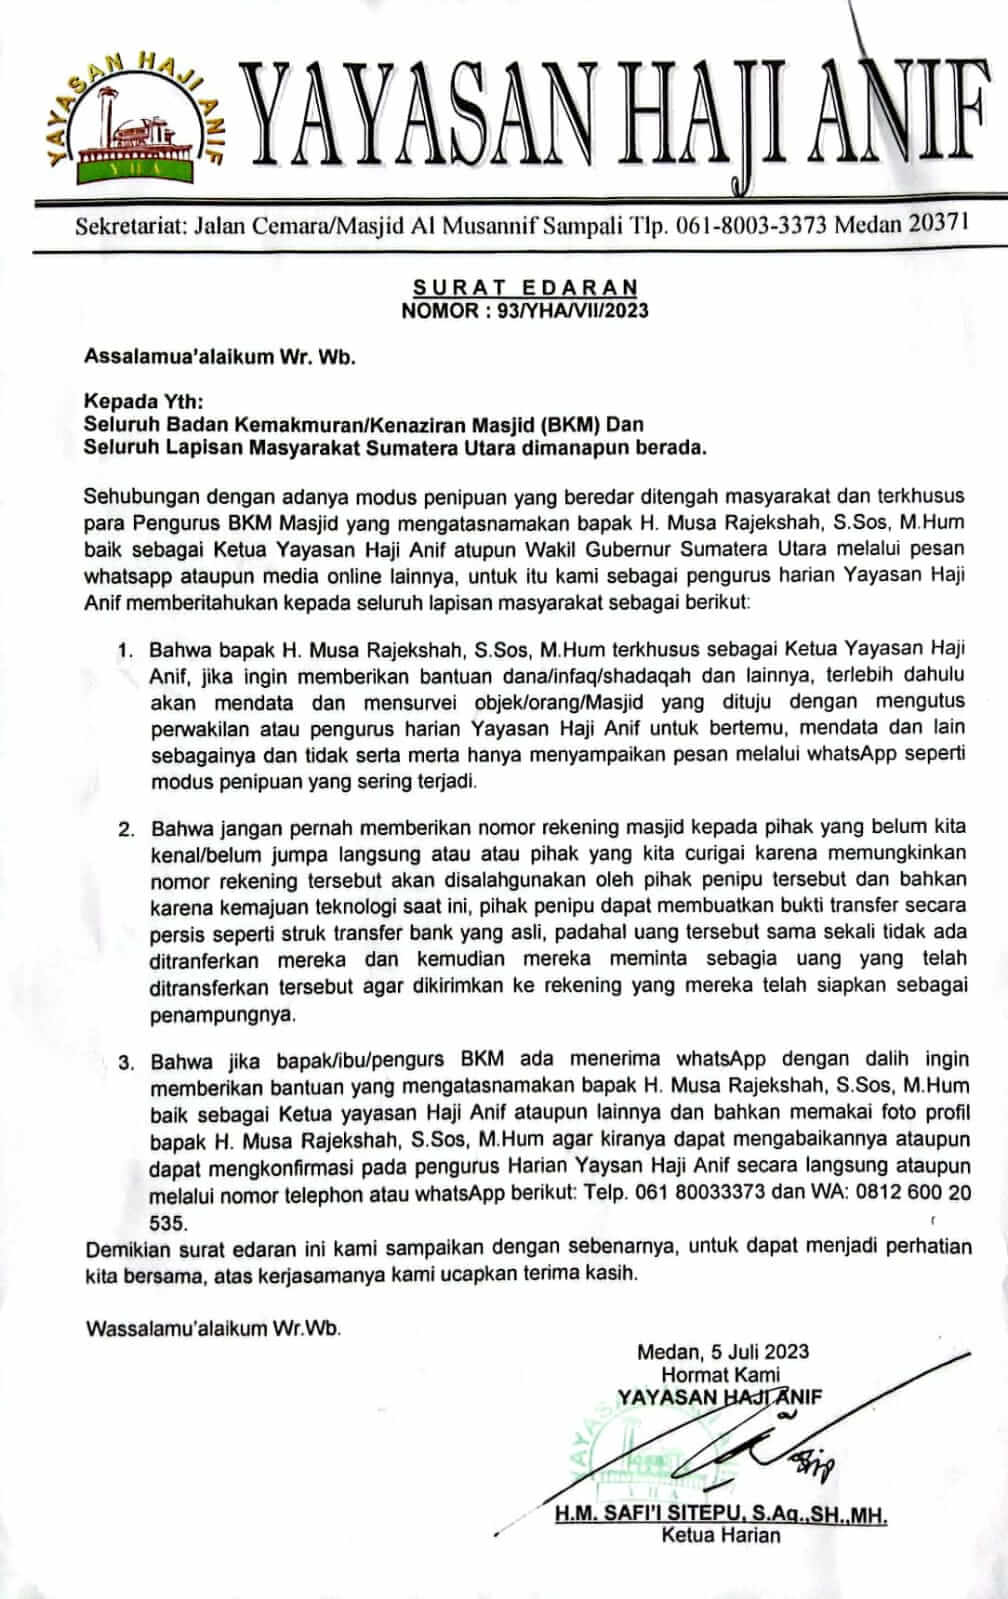 Waspada Penipuan Mengatas Namakan Bp. H. Musa Rajekshah (Ketua Yayasan Haji Anif) Via Online